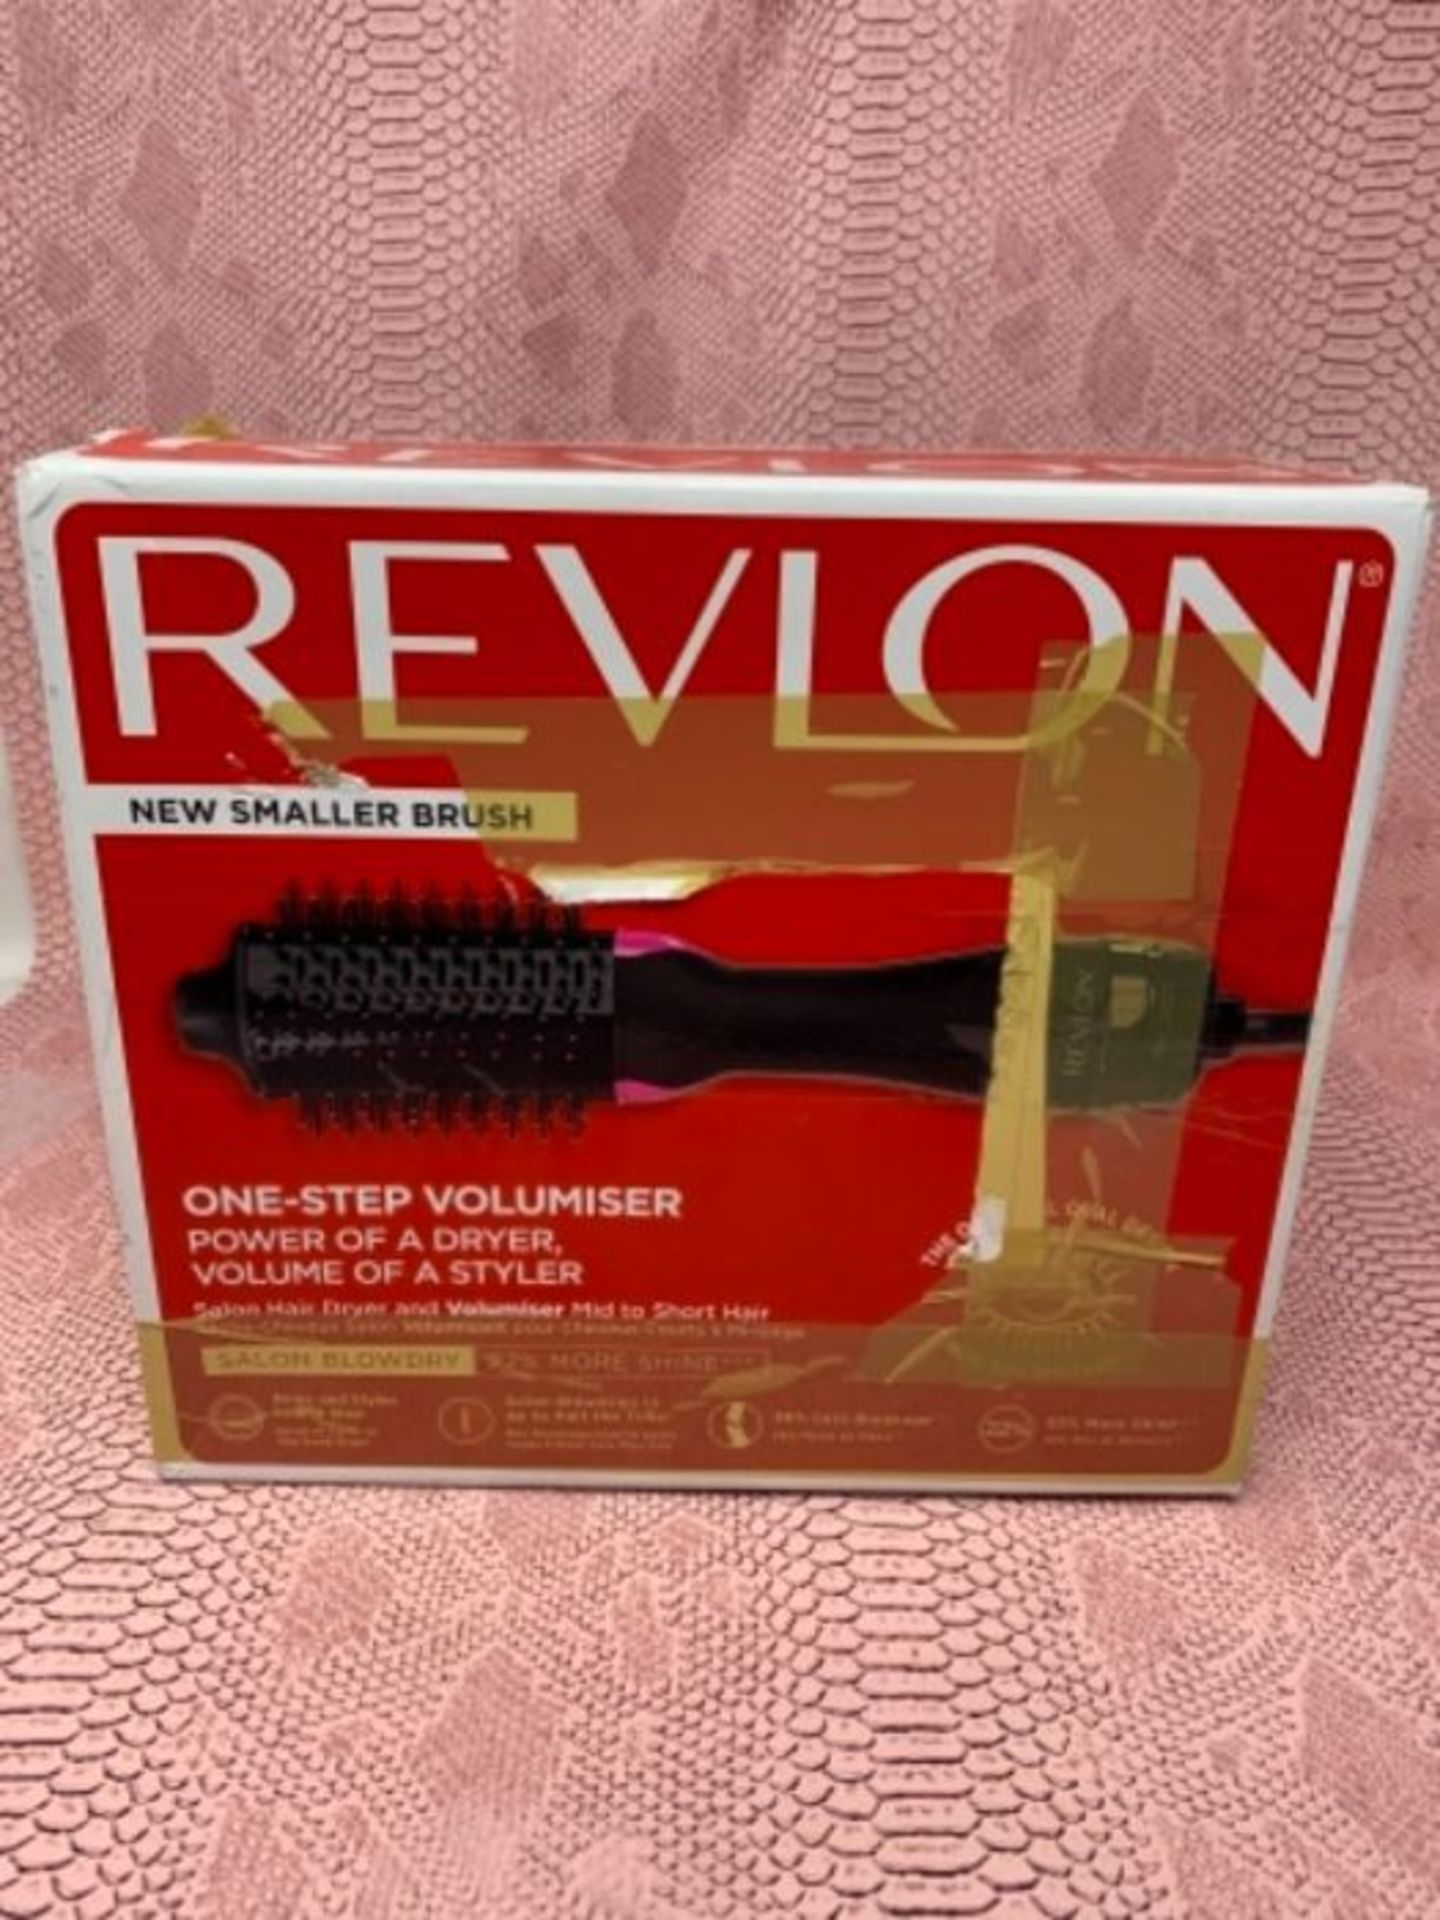 RRP £58.00 REVLON Salon One-Step Hair Dryer and Volumiser for Medium to Short Hair, RVDR5282UKE - Image 2 of 3